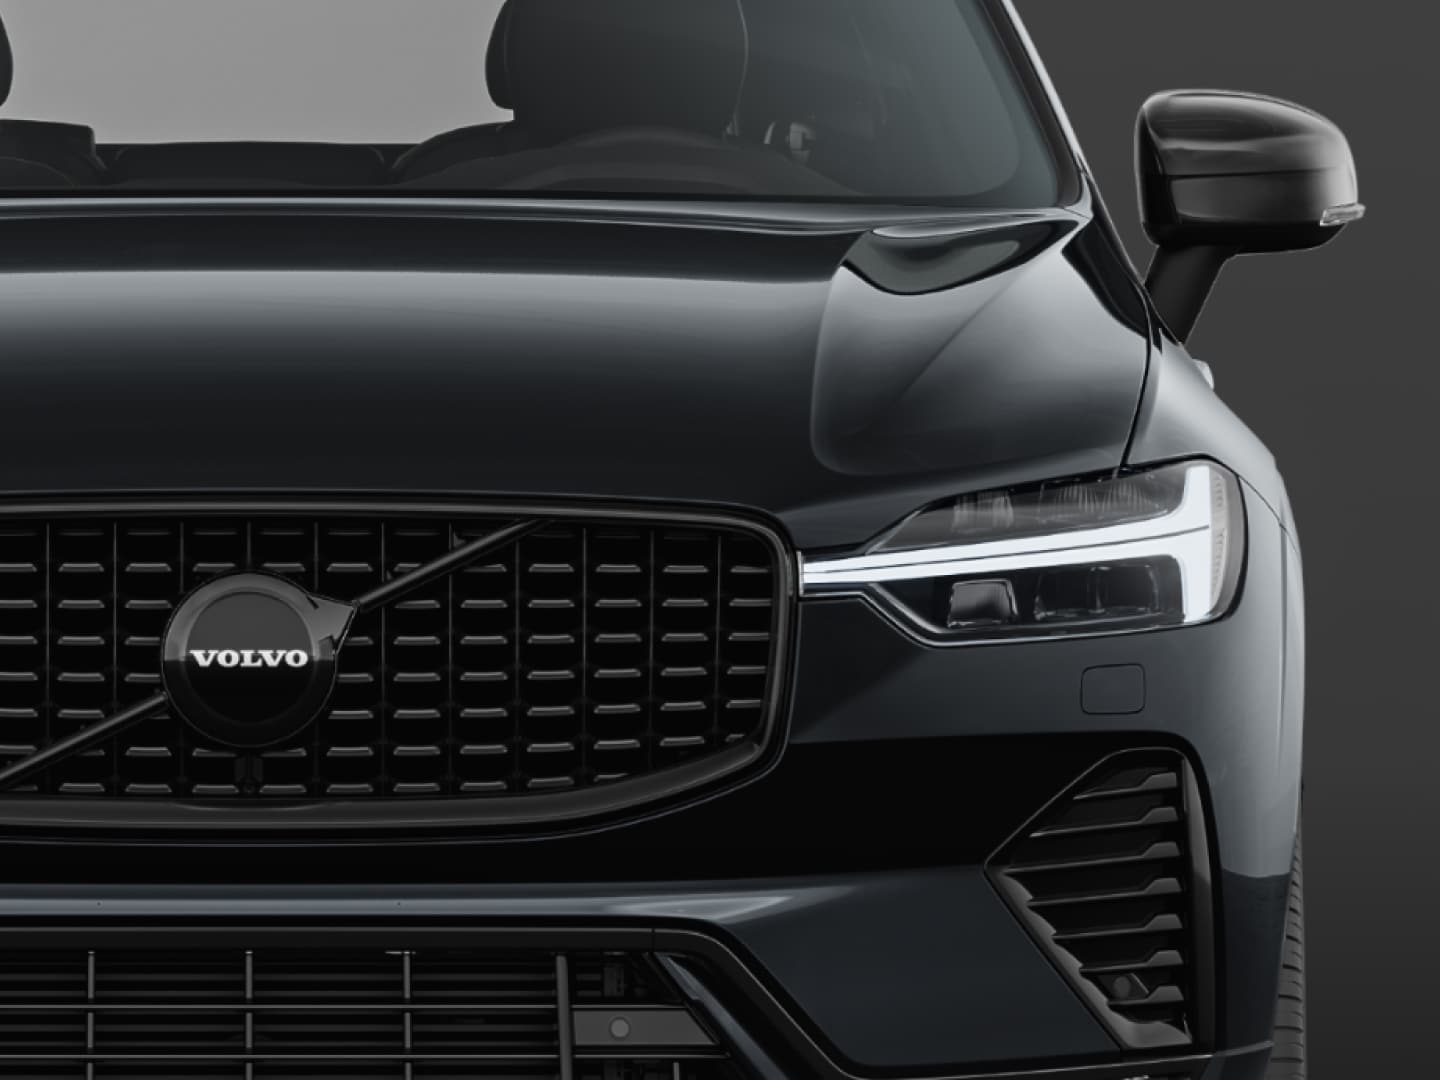 Detalii exterioare estompate, vopsite în negru, pe Volvo XC60 Black Edition mild hybrid.